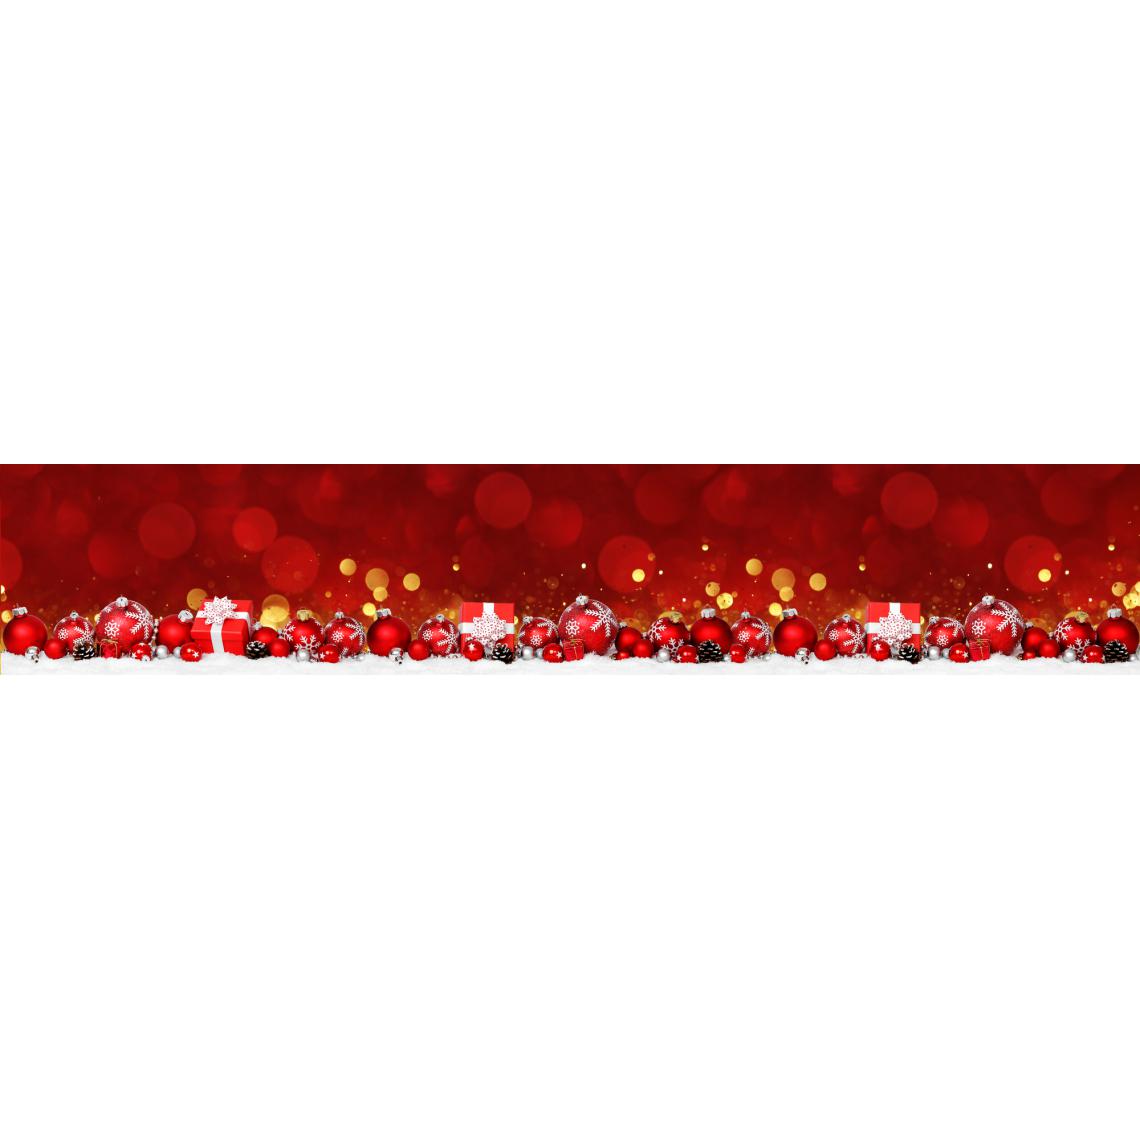 Alter - Chemin de cuisine, 100% Made in Italy, Tapis antitache avec impression numérique, Coulisse antidérapante et lavable, Modèle de Noël - Cadence, cm 280x52 - Tapis